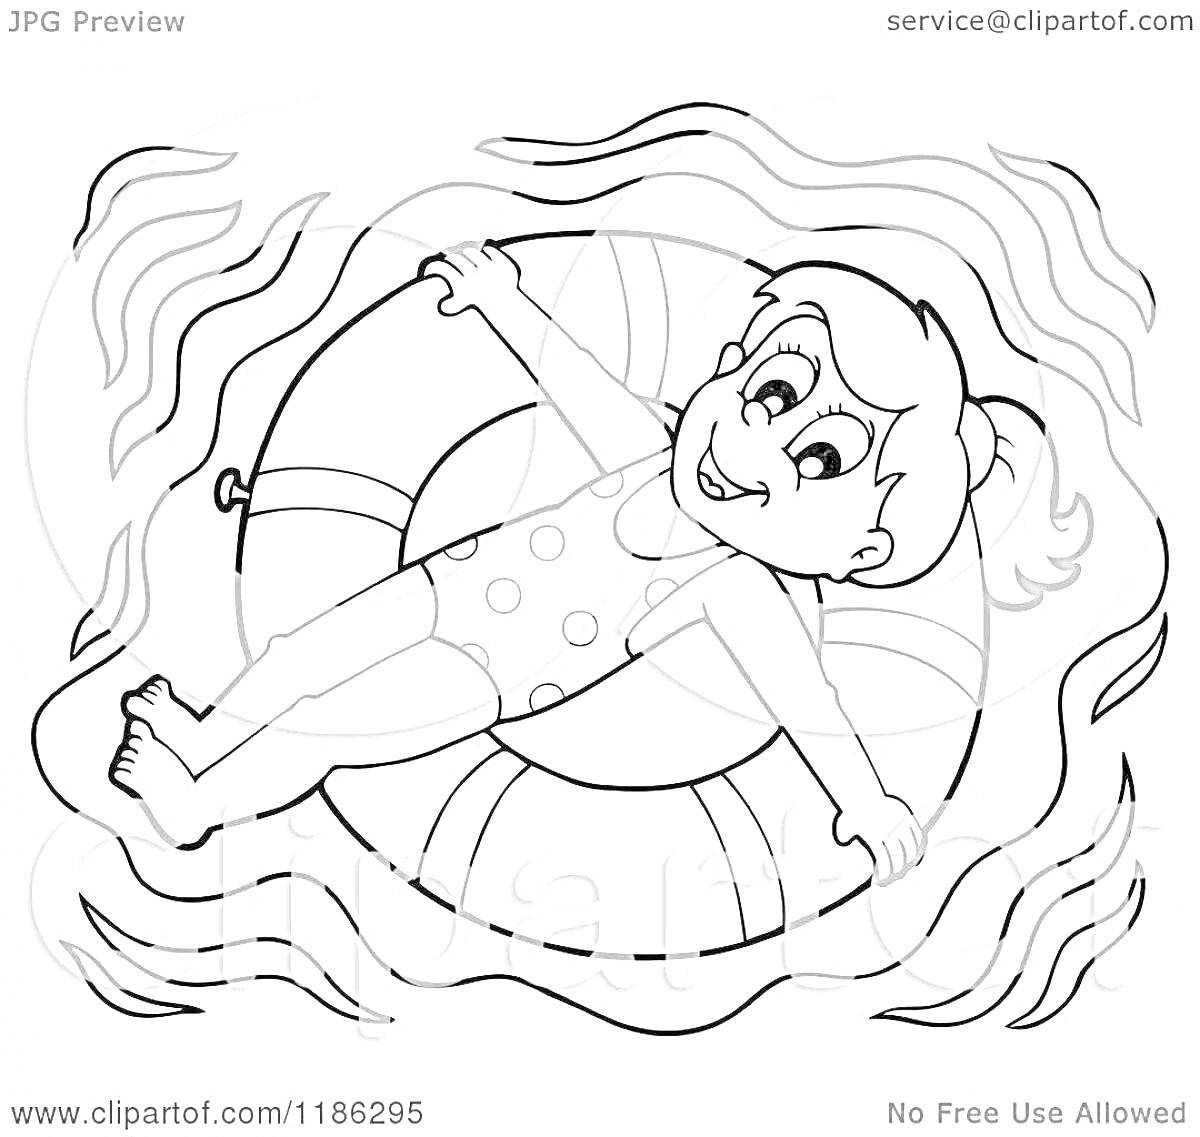 На раскраске изображено: Девочка, Бассейн, Плавательный круг, Вода, Плавание, Радость, Лето, Отдых, Безопасность